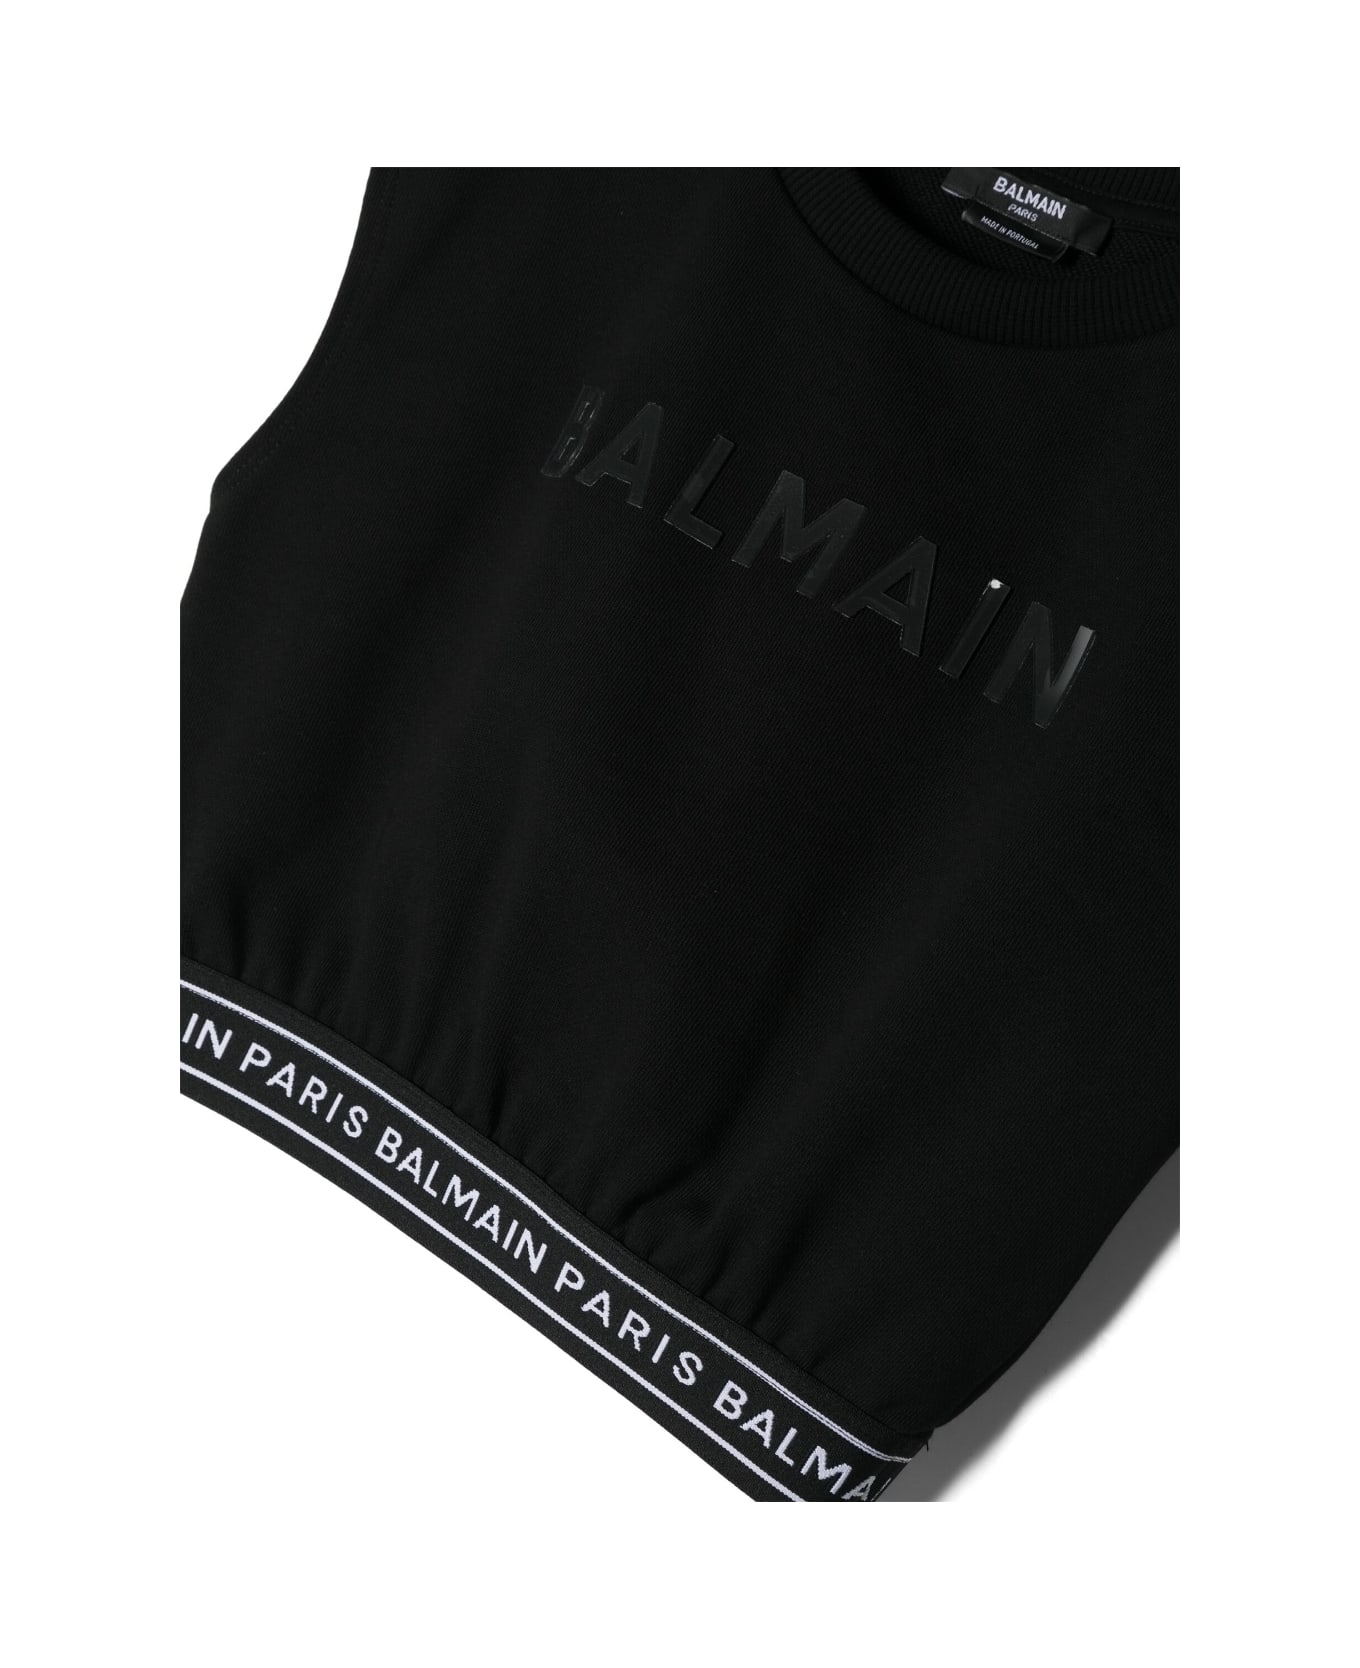 Balmain Printed Top - Black